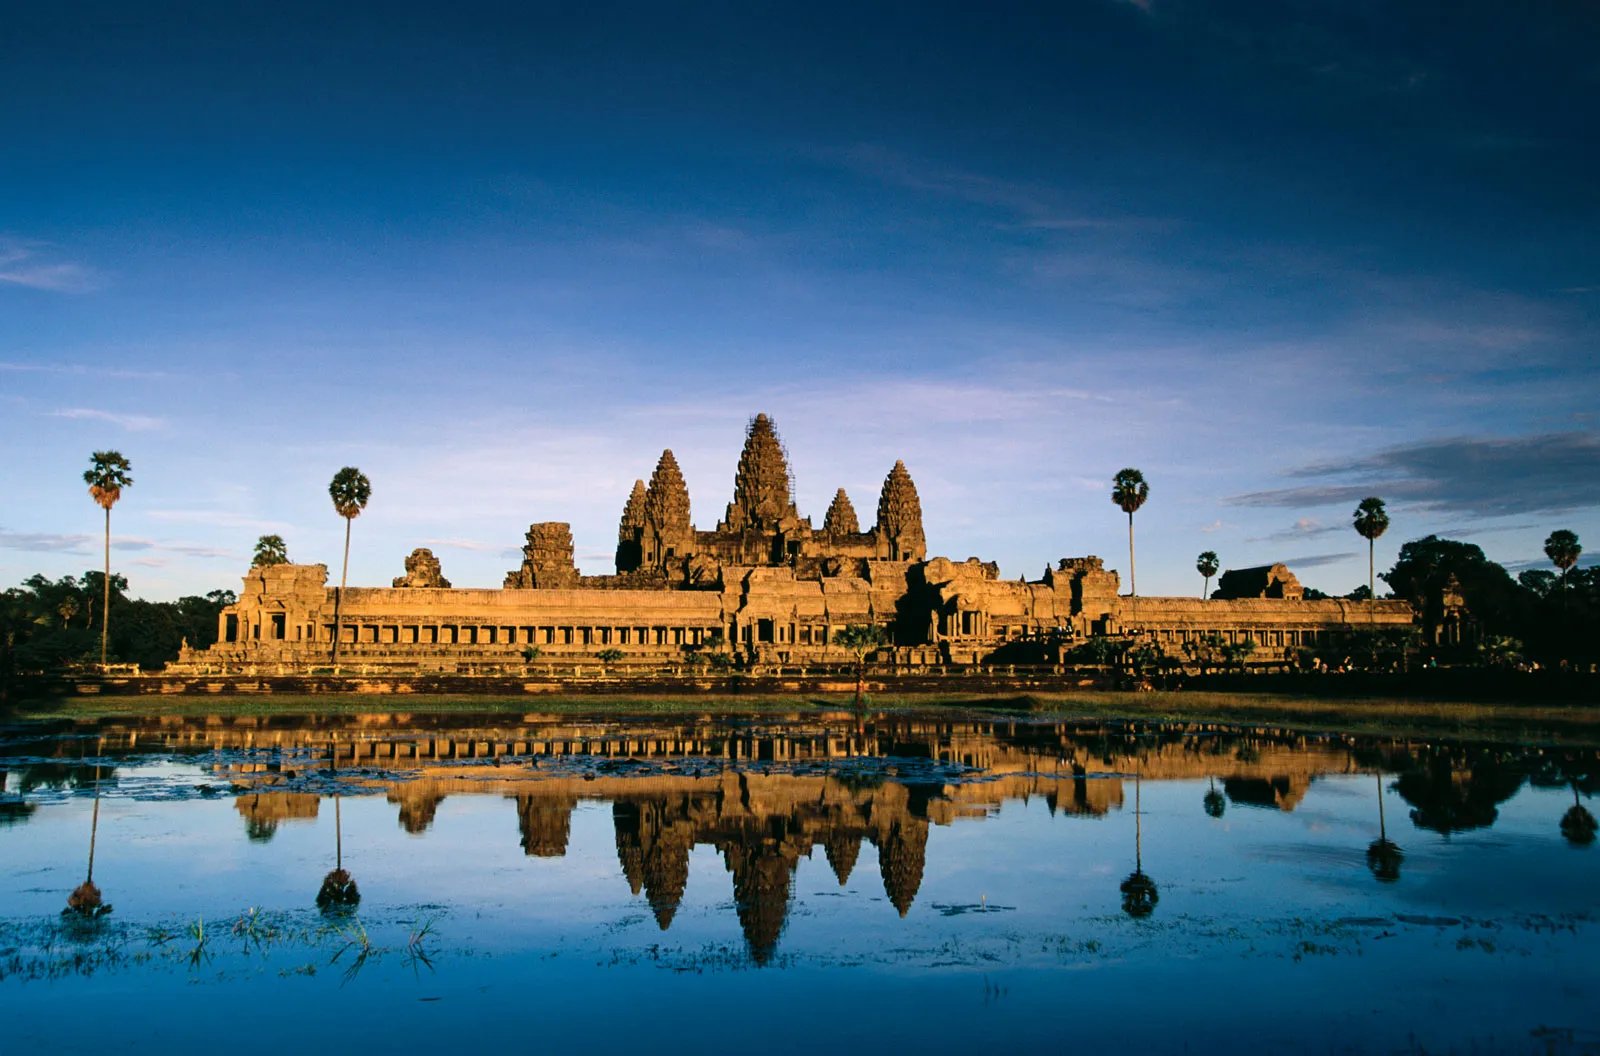 Du lịch Angkor Wat 1